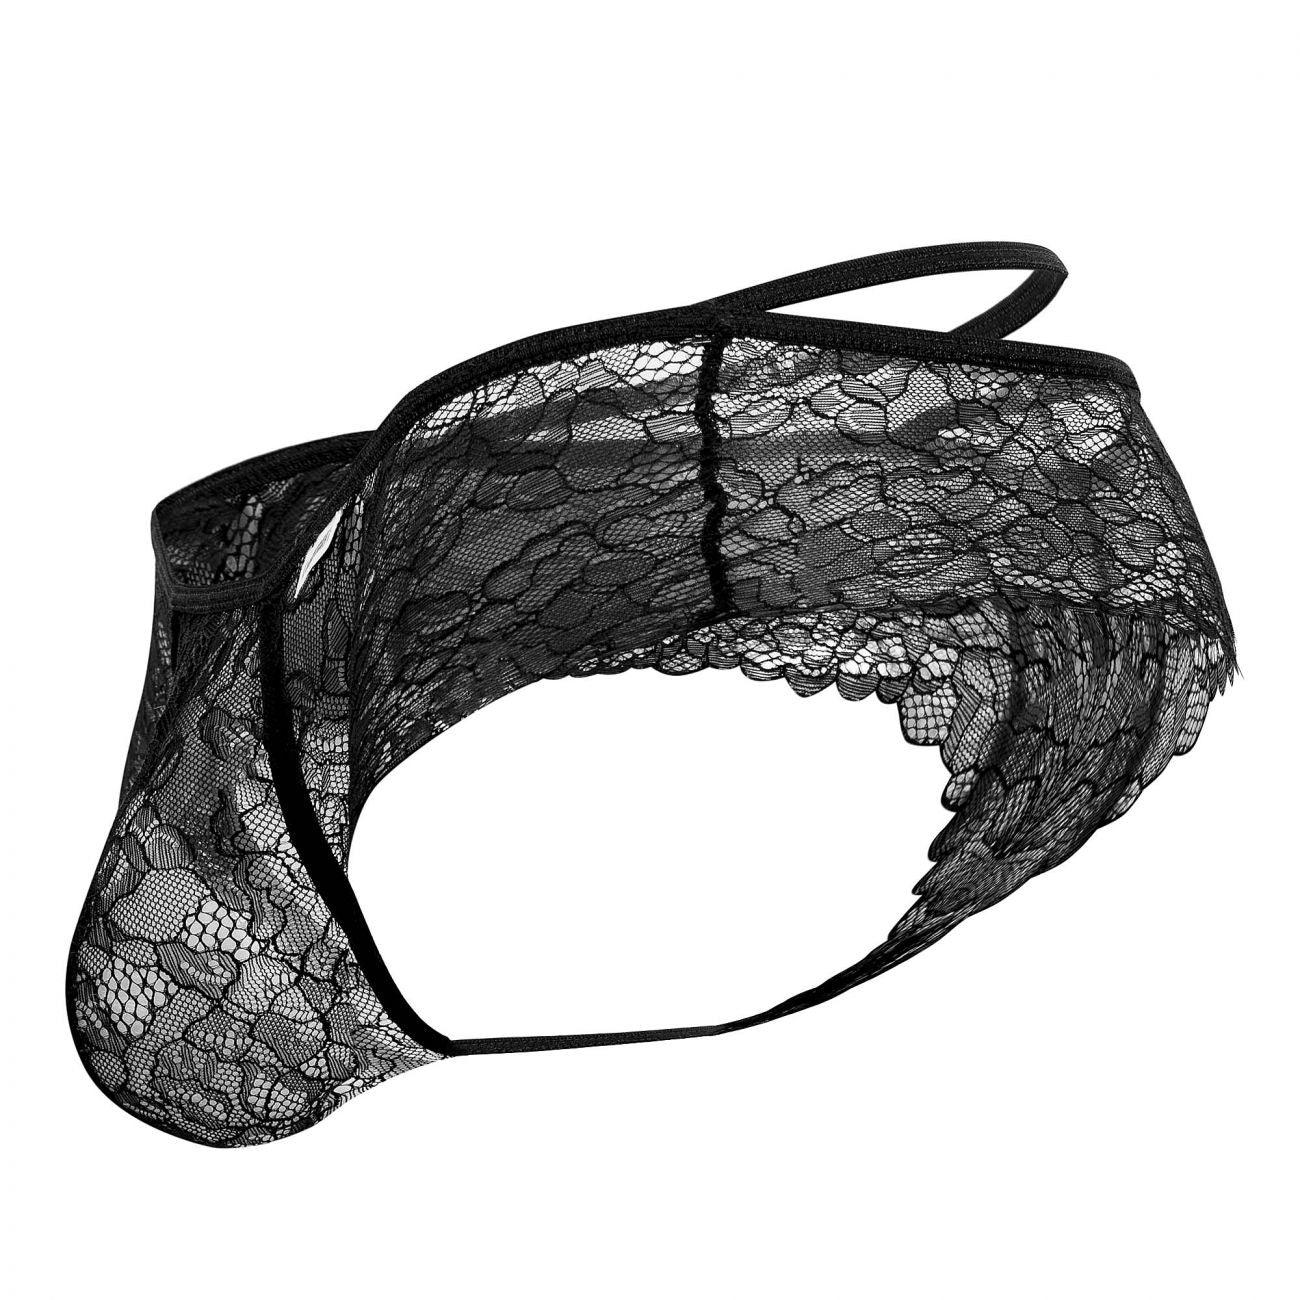 image of product,Lace Boyshort Thongs - SEXYEONE